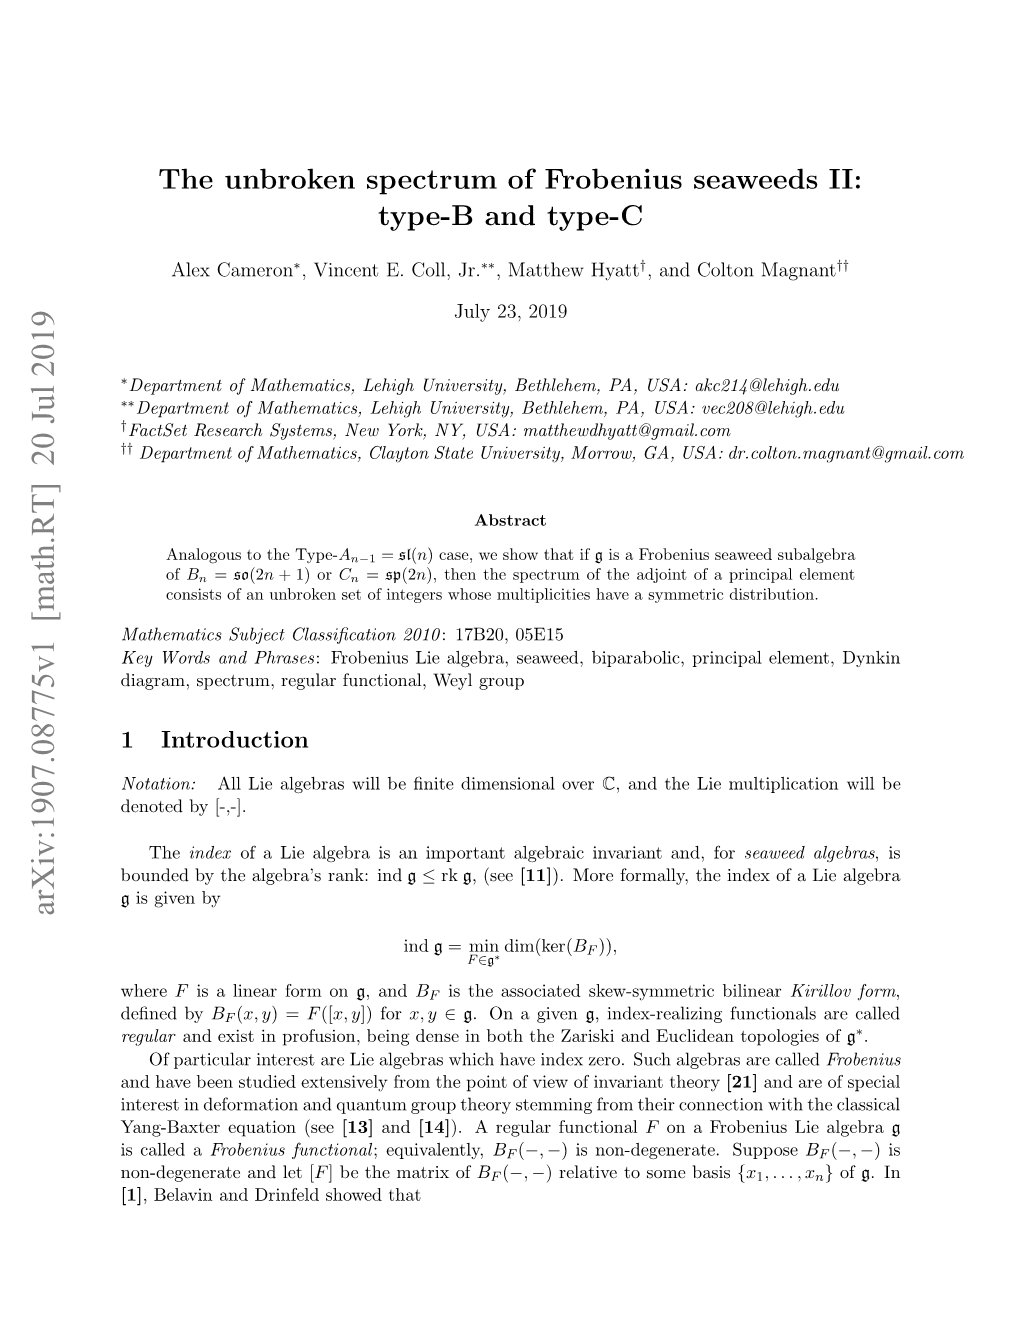 The Unbroken Spectrum of Frobenius Seaweeds II: Type-B and Type-C